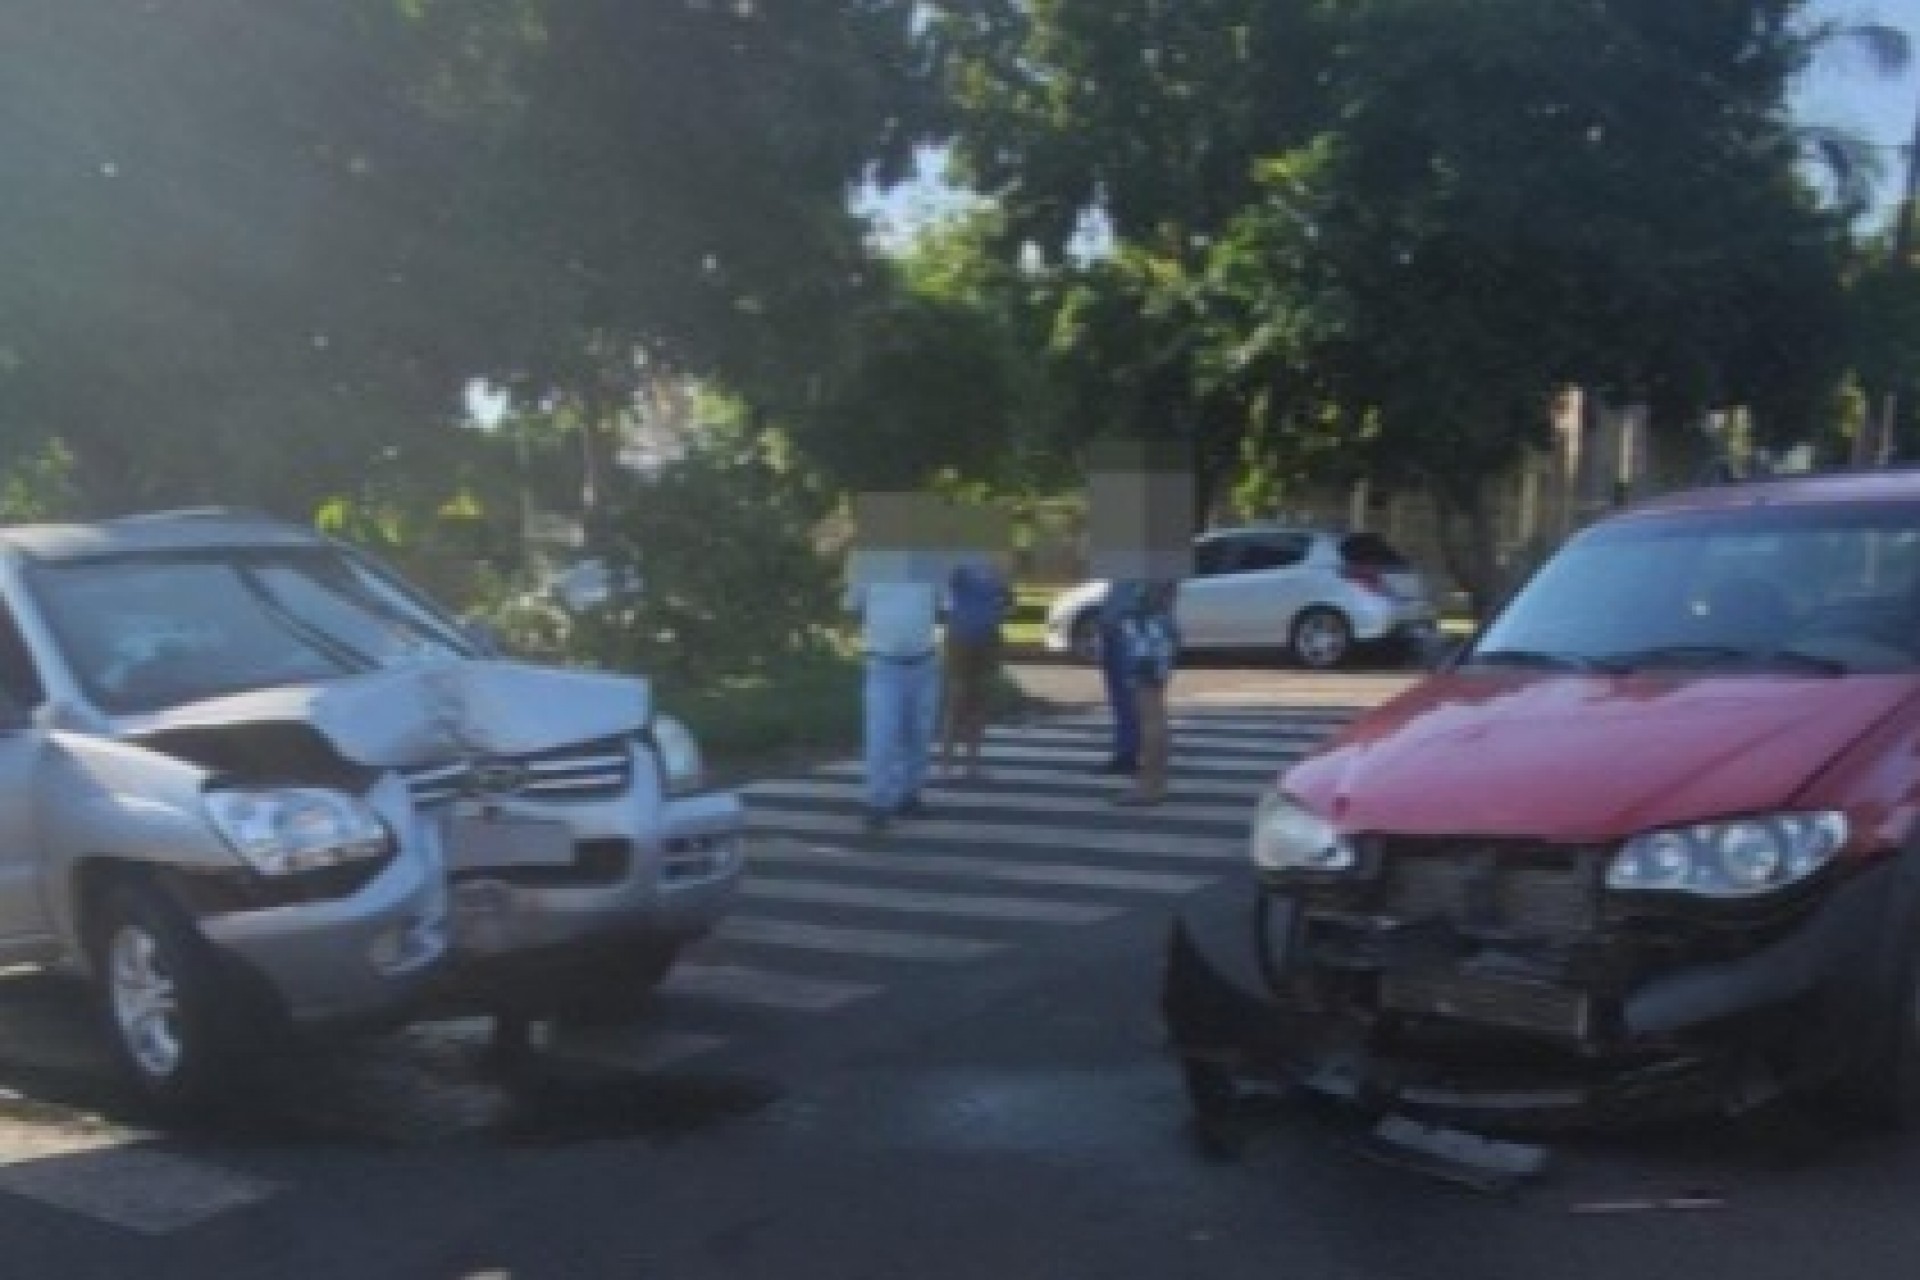 Medianeira: Motorista avança preferencial e causa acidente no Bairro Cidade Alta